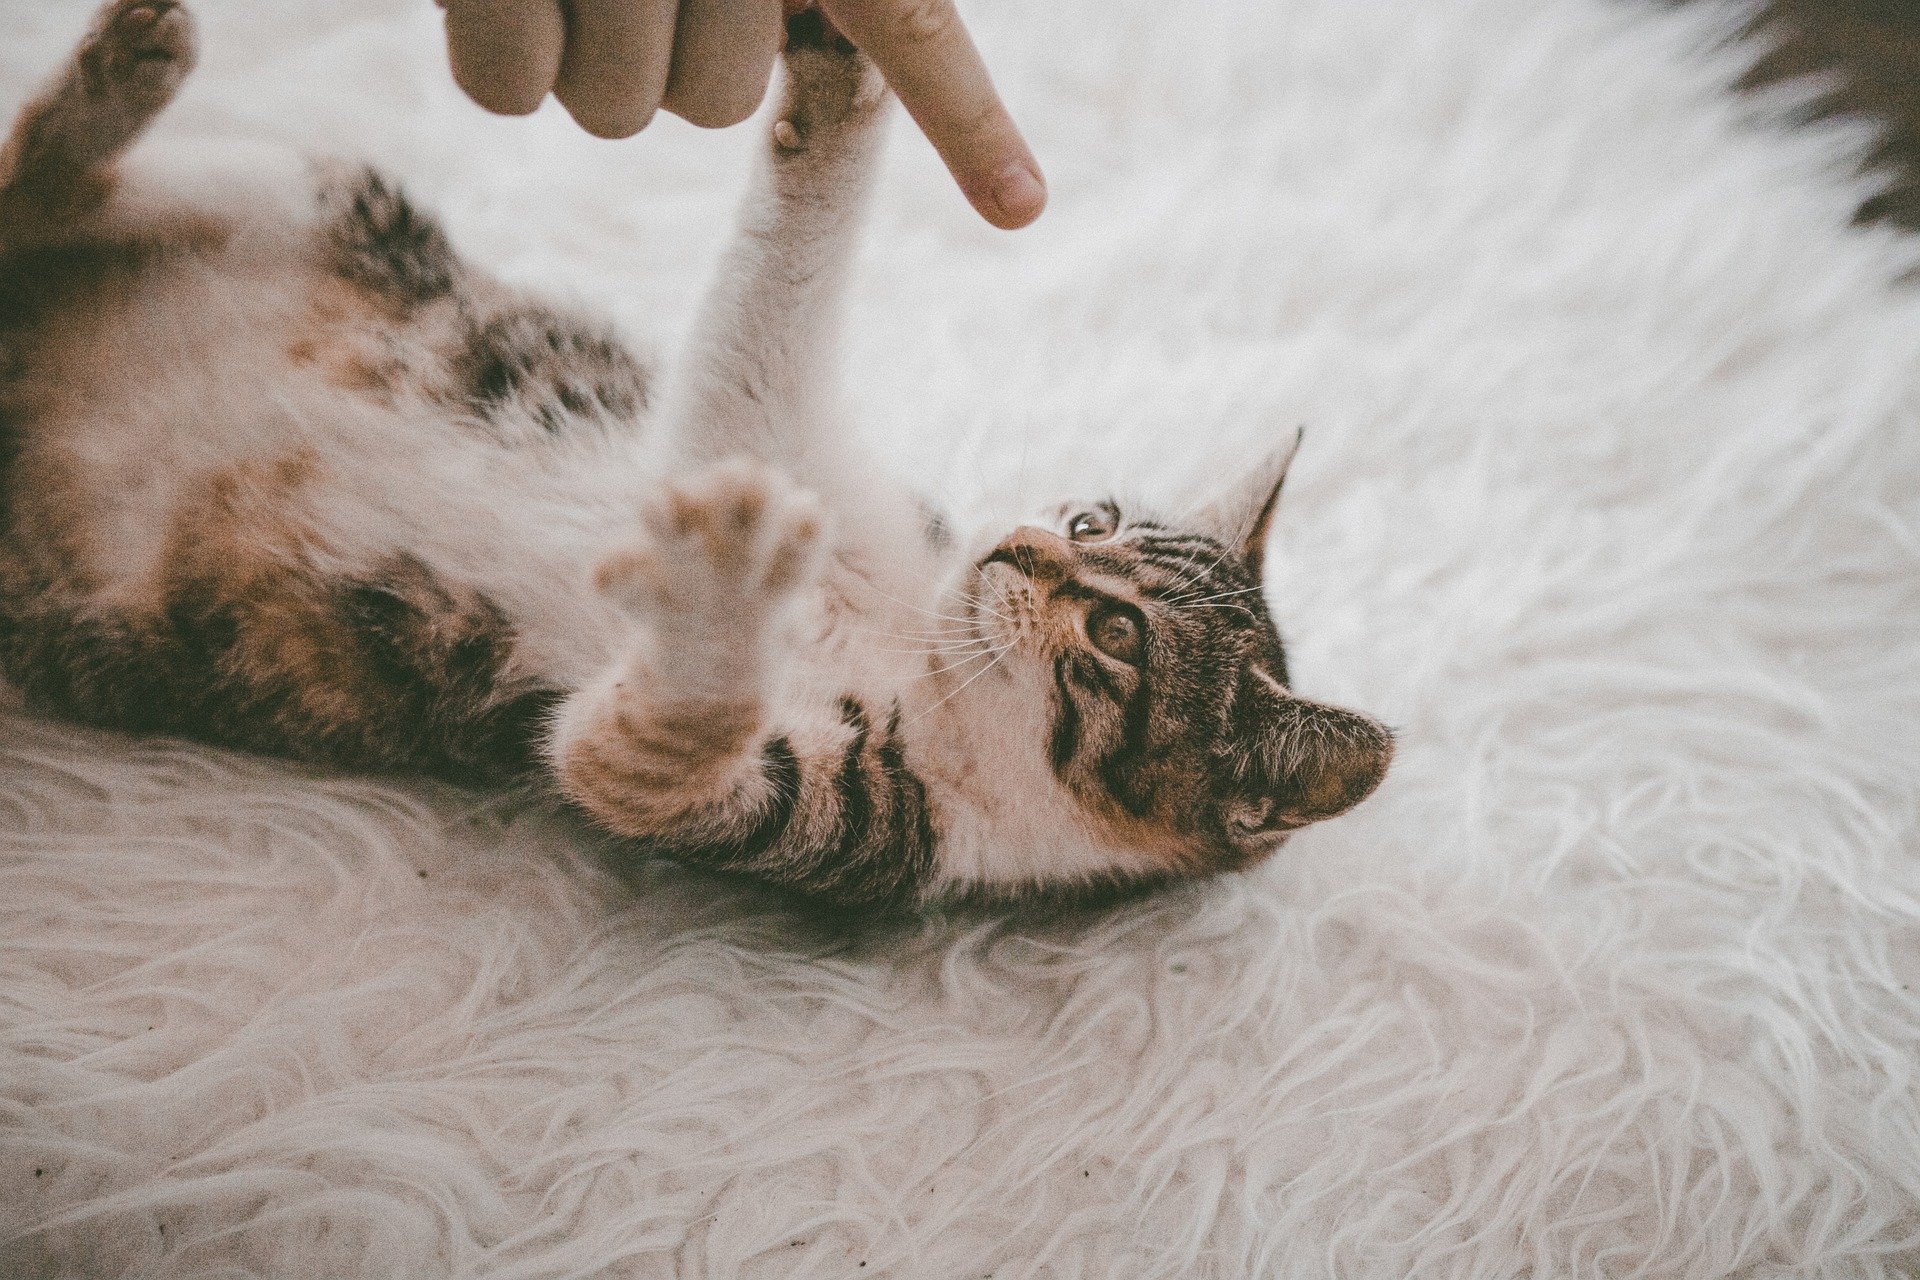 Koty miauczą głównie w kontaktach z ludźmi. Przy innych zwierzętach raczej używają innych sygnałów aniżeli miauczenia.